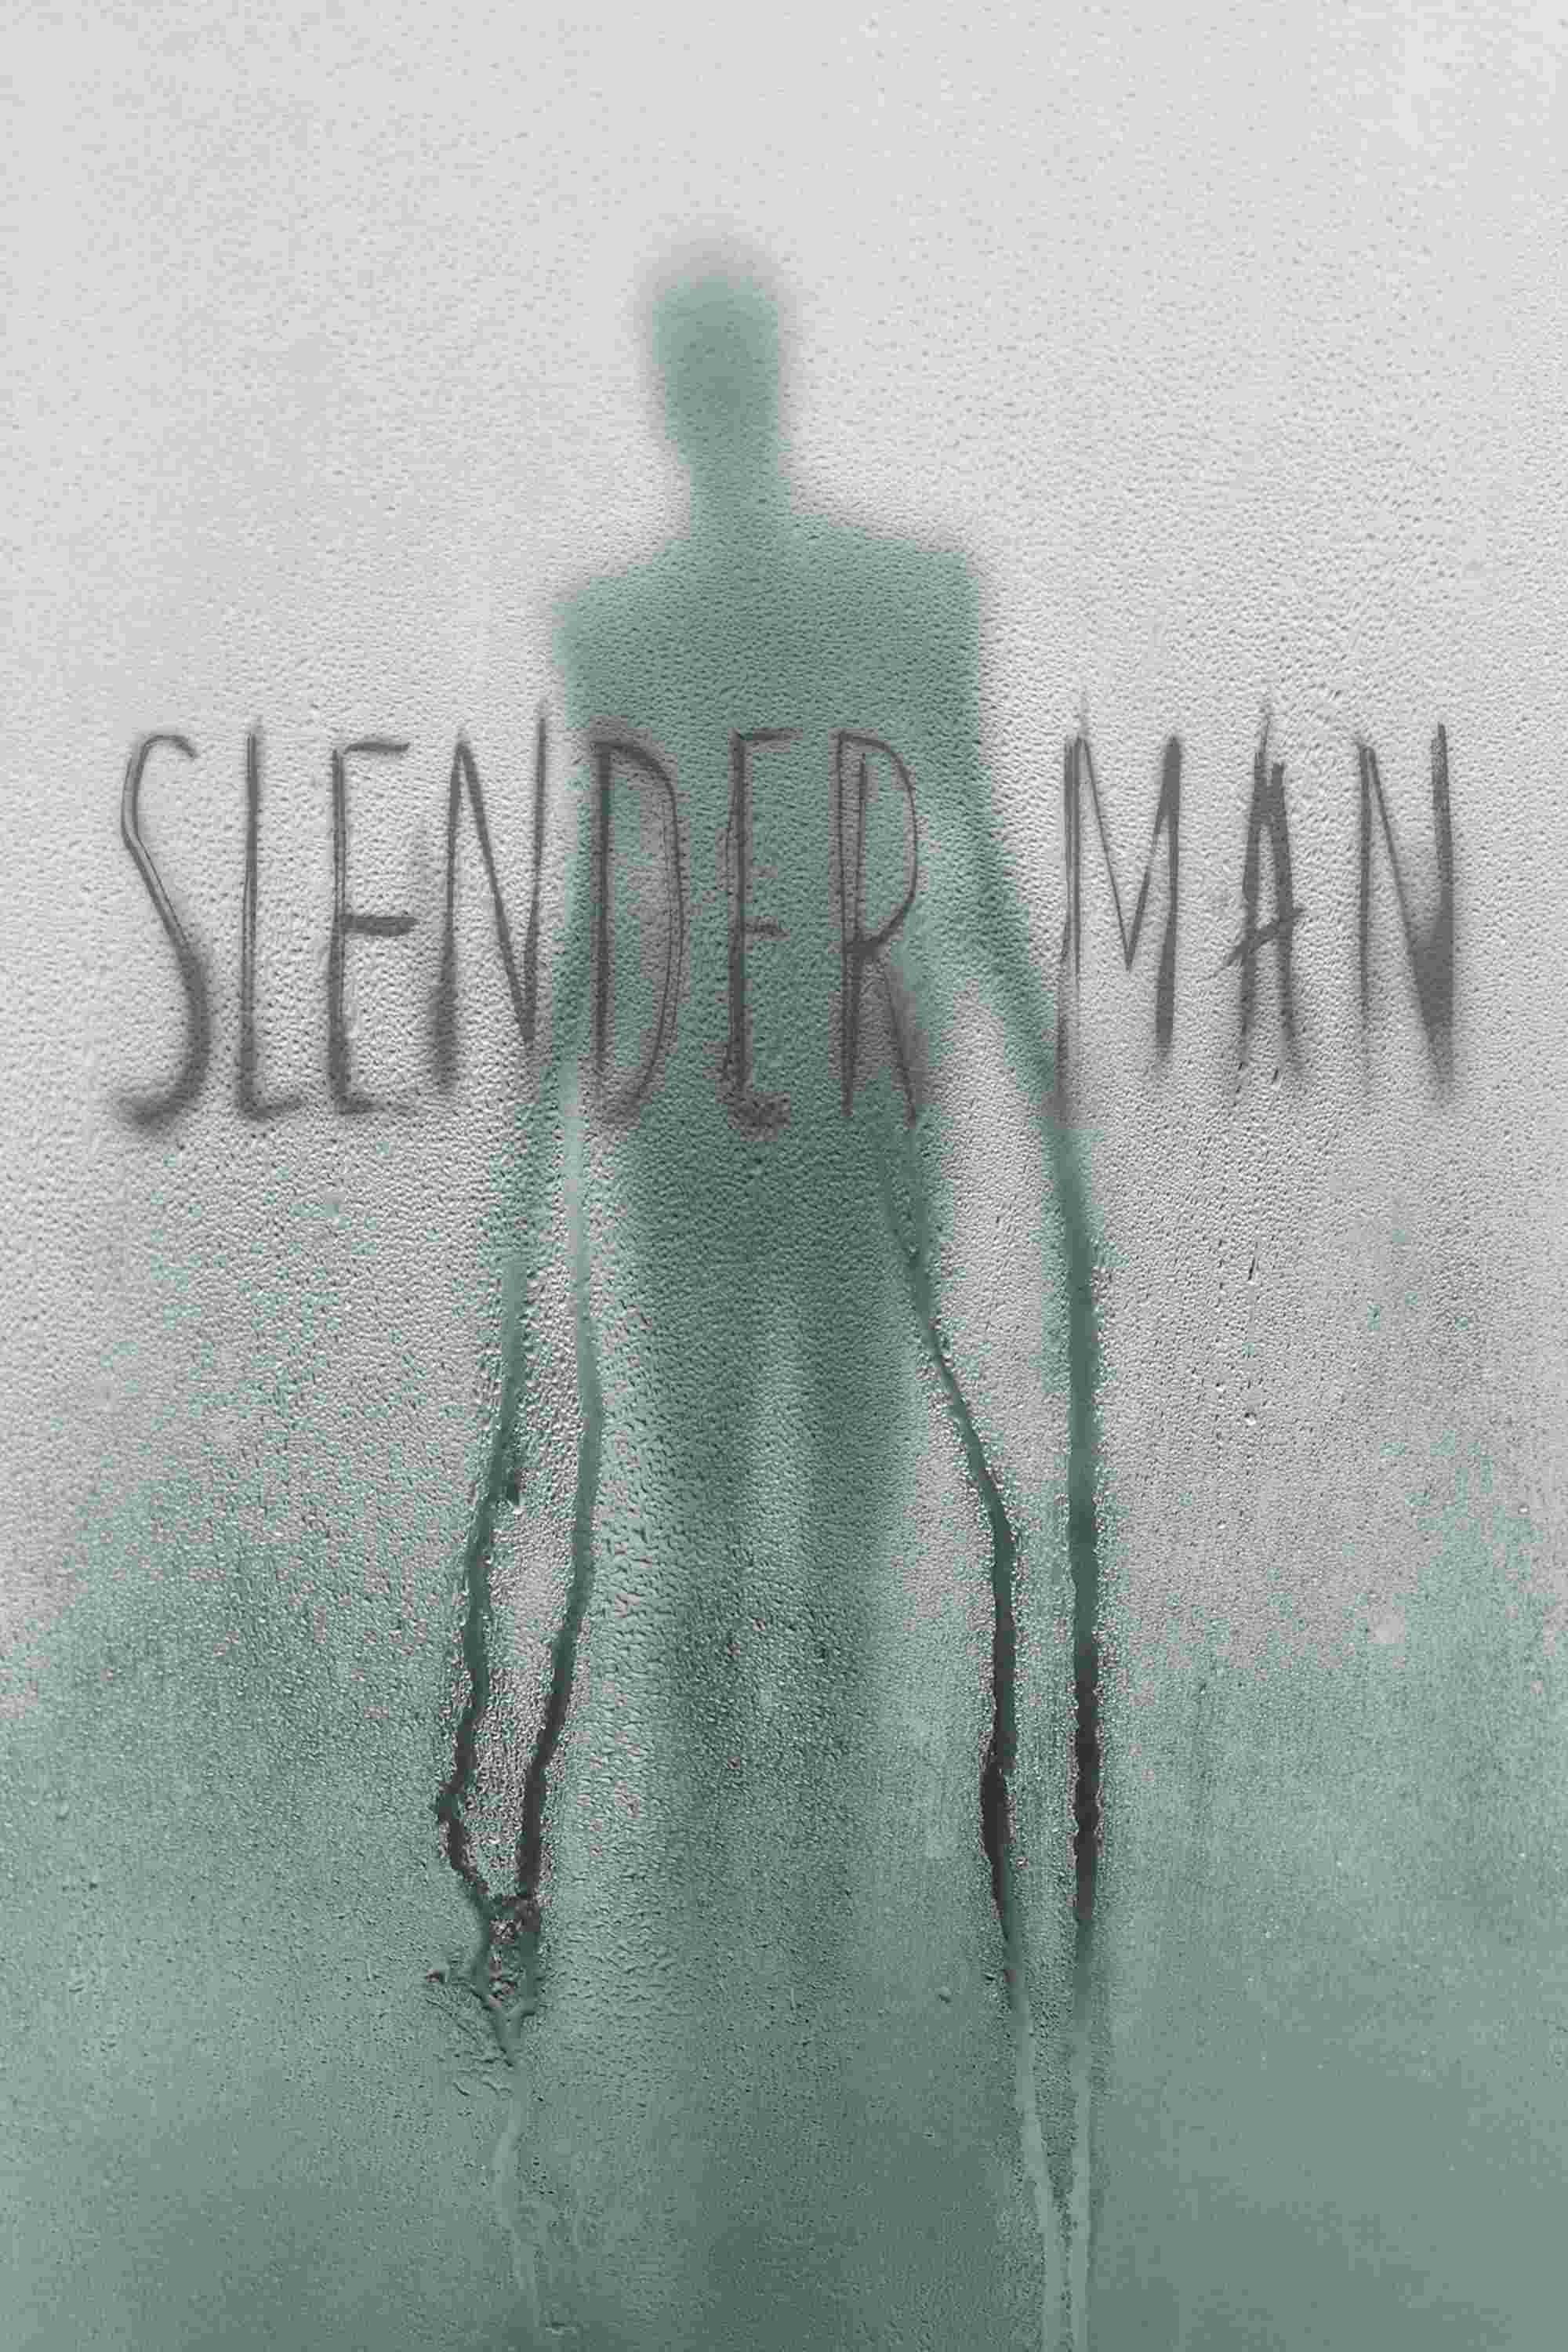 Slender Man (2018) Joey King